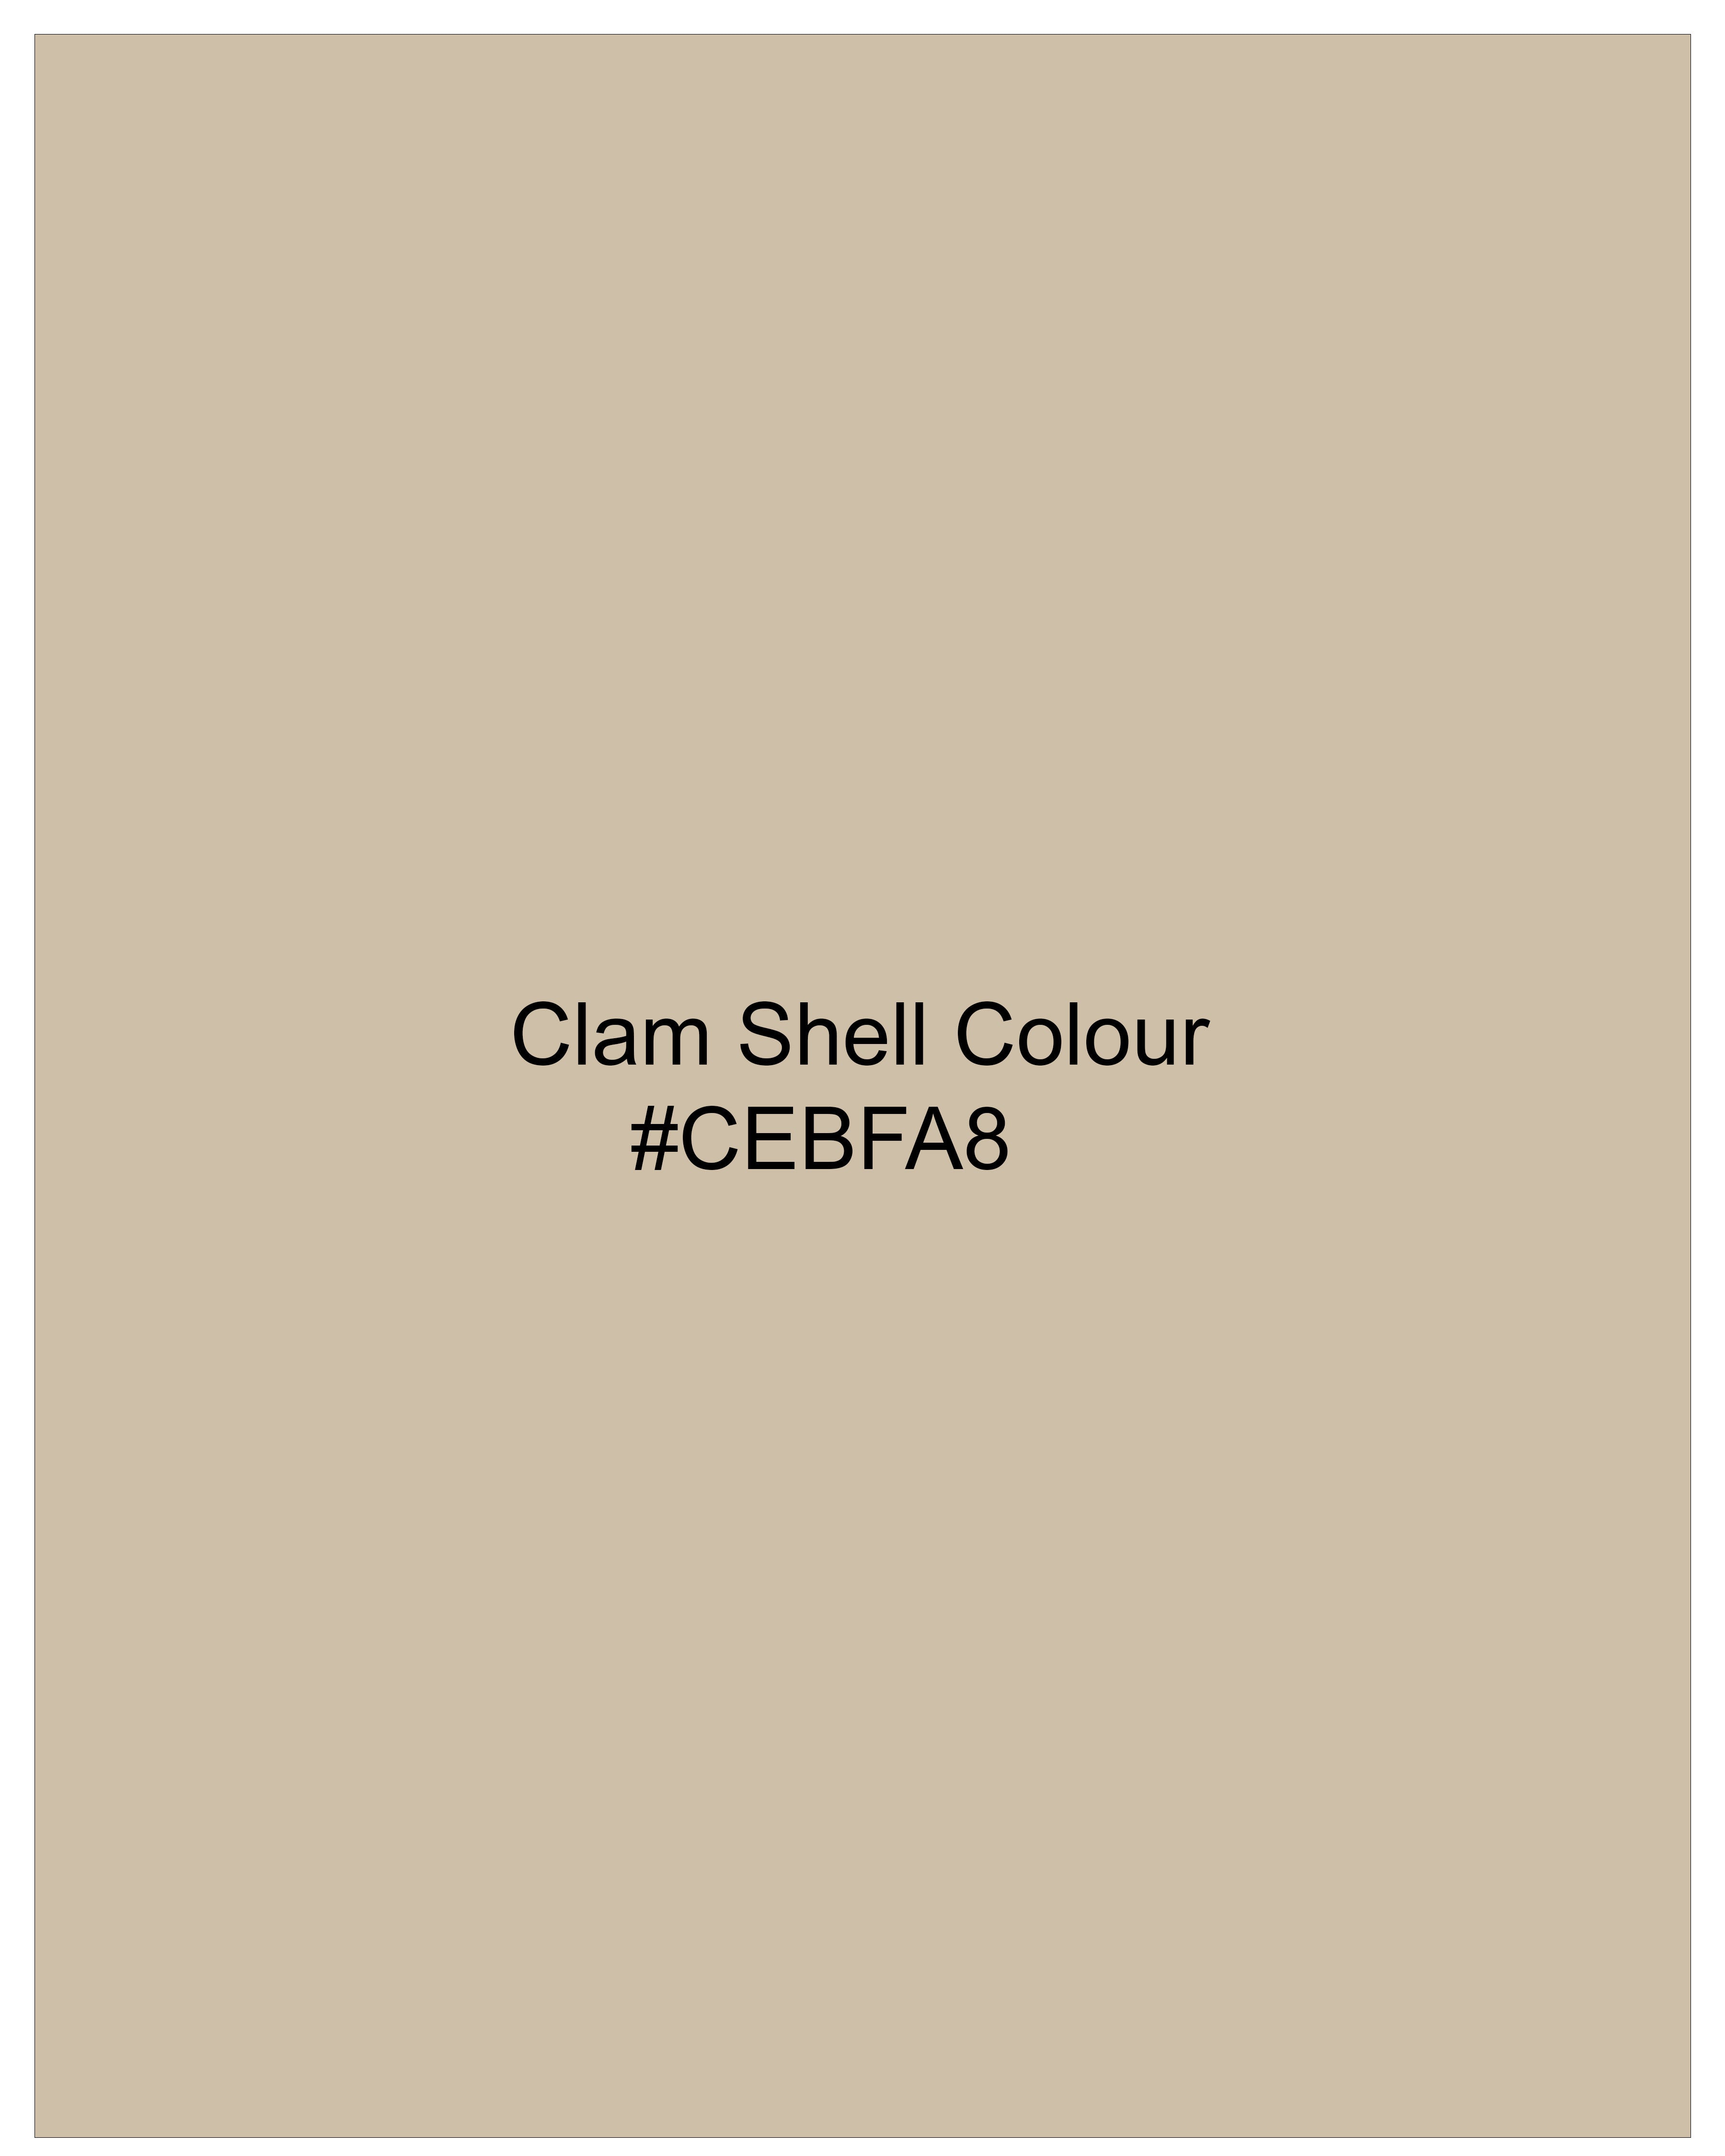 Calm Shell Brown Subtle Plaid Pants T2490-28, T2490-30, T2490-32, T2490-34, T2490-36, T2490-38, T2490-40, T2490-42, T2490-44